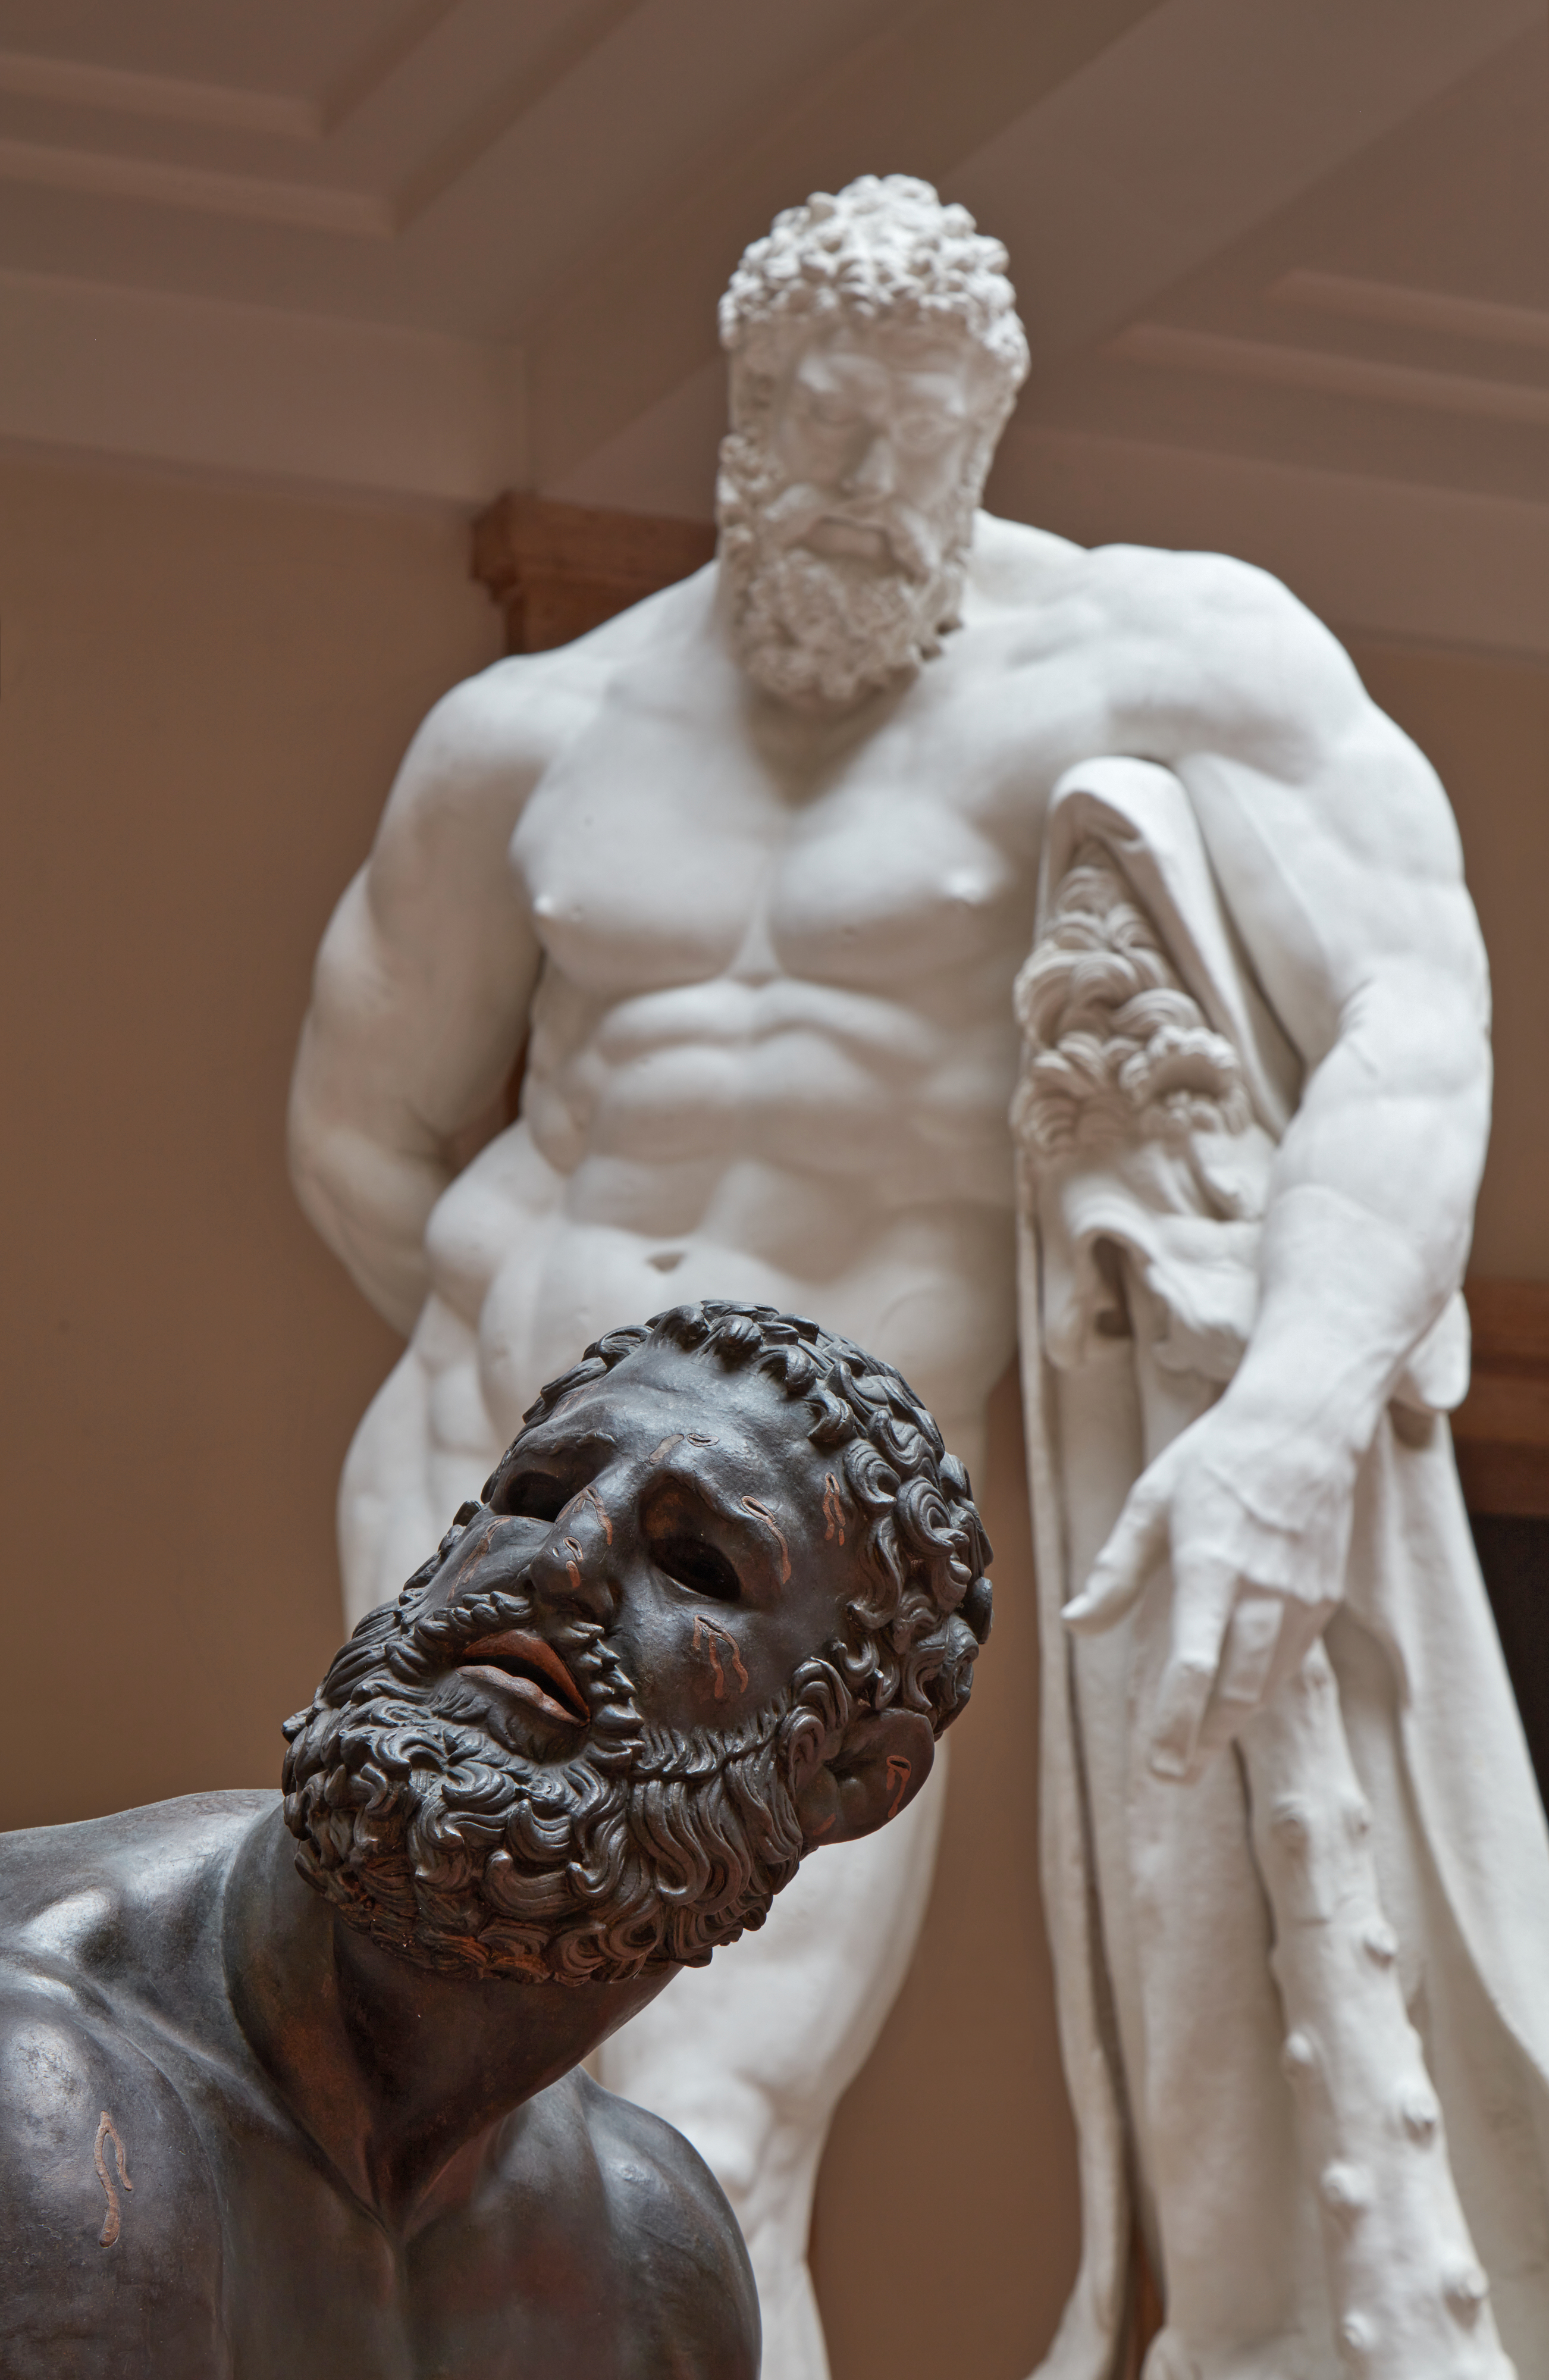 Kopf eines bärtigen Mannes vor einer nackten Skulptur eines muskulösen, bärtigen Mannes